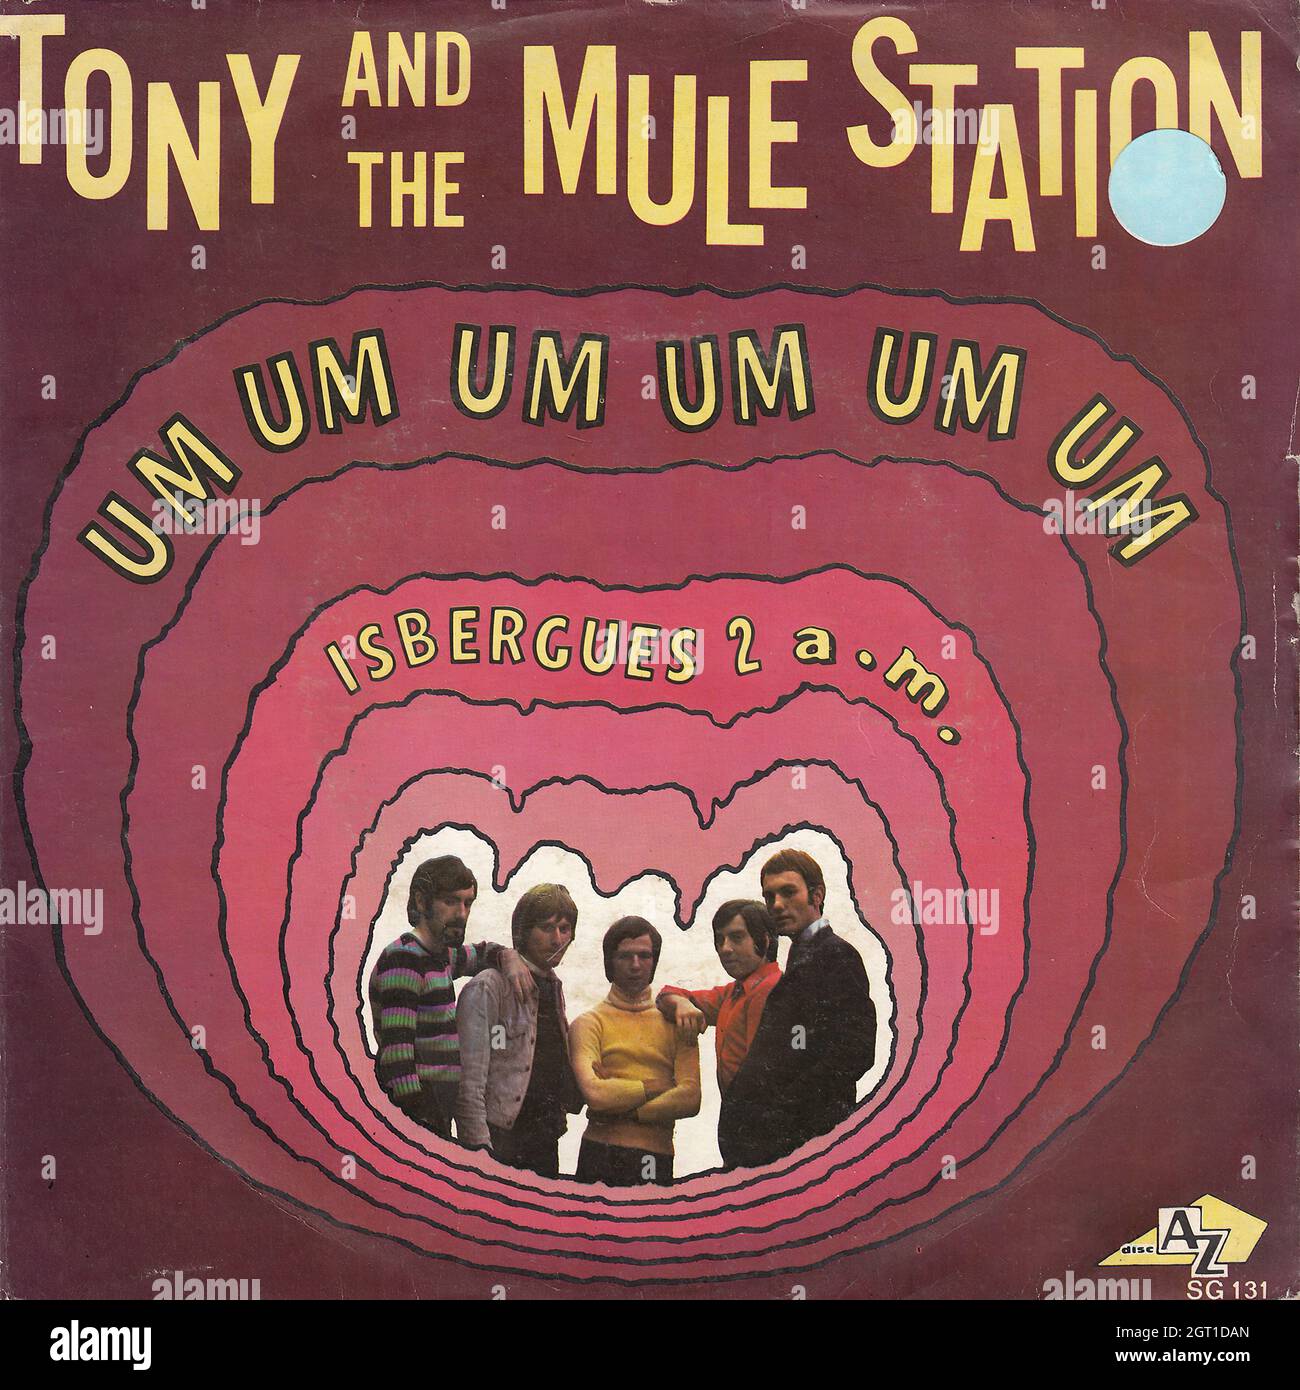 Tony and The Mule Station - Um um um um um um - Isbergues 2 A.M. 45rpm - Vintage Vinyl Record Cover Stock Photo